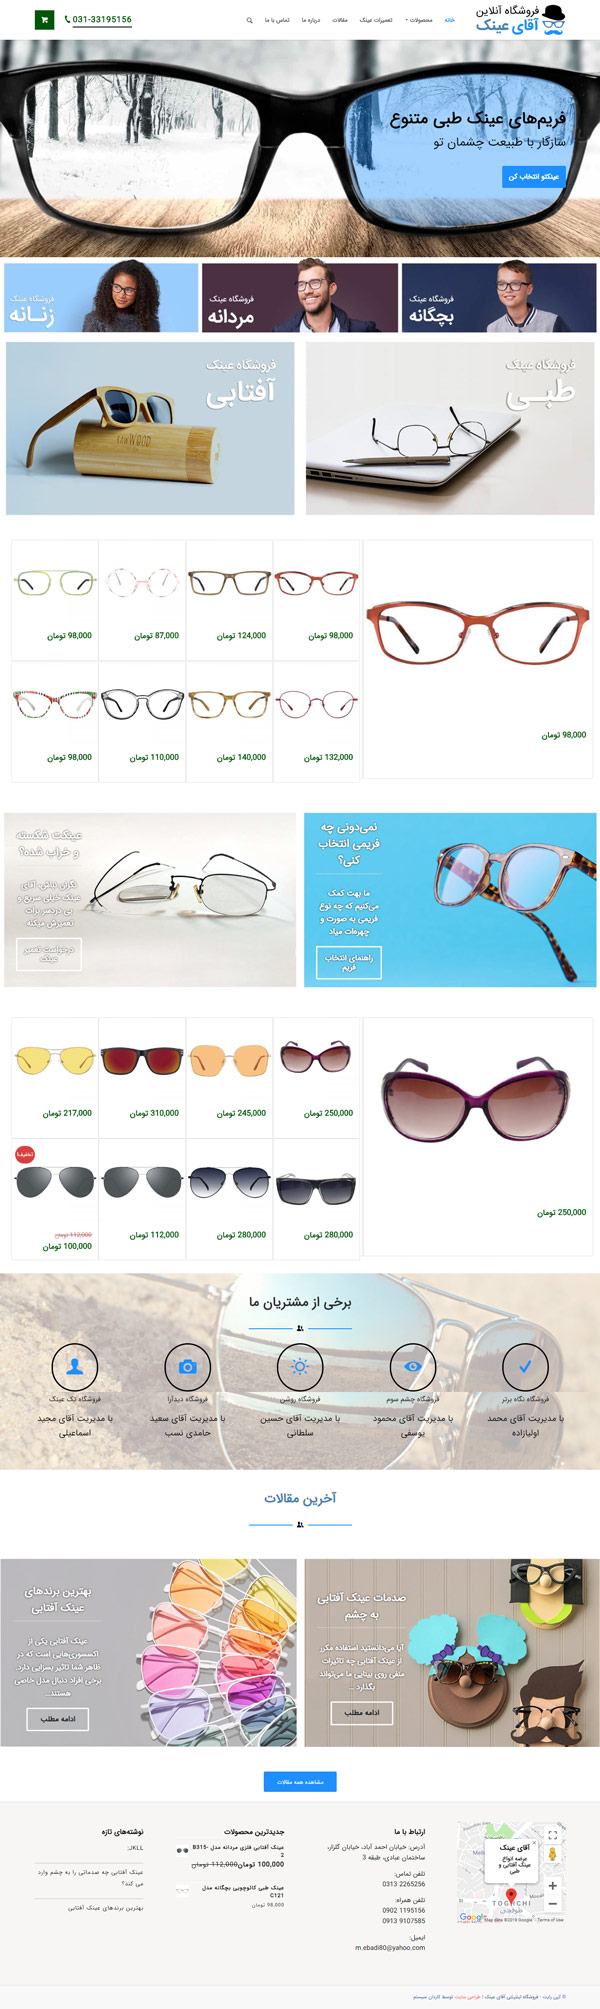 طراحی سایت آقای عینک | فروش و پخش عینک